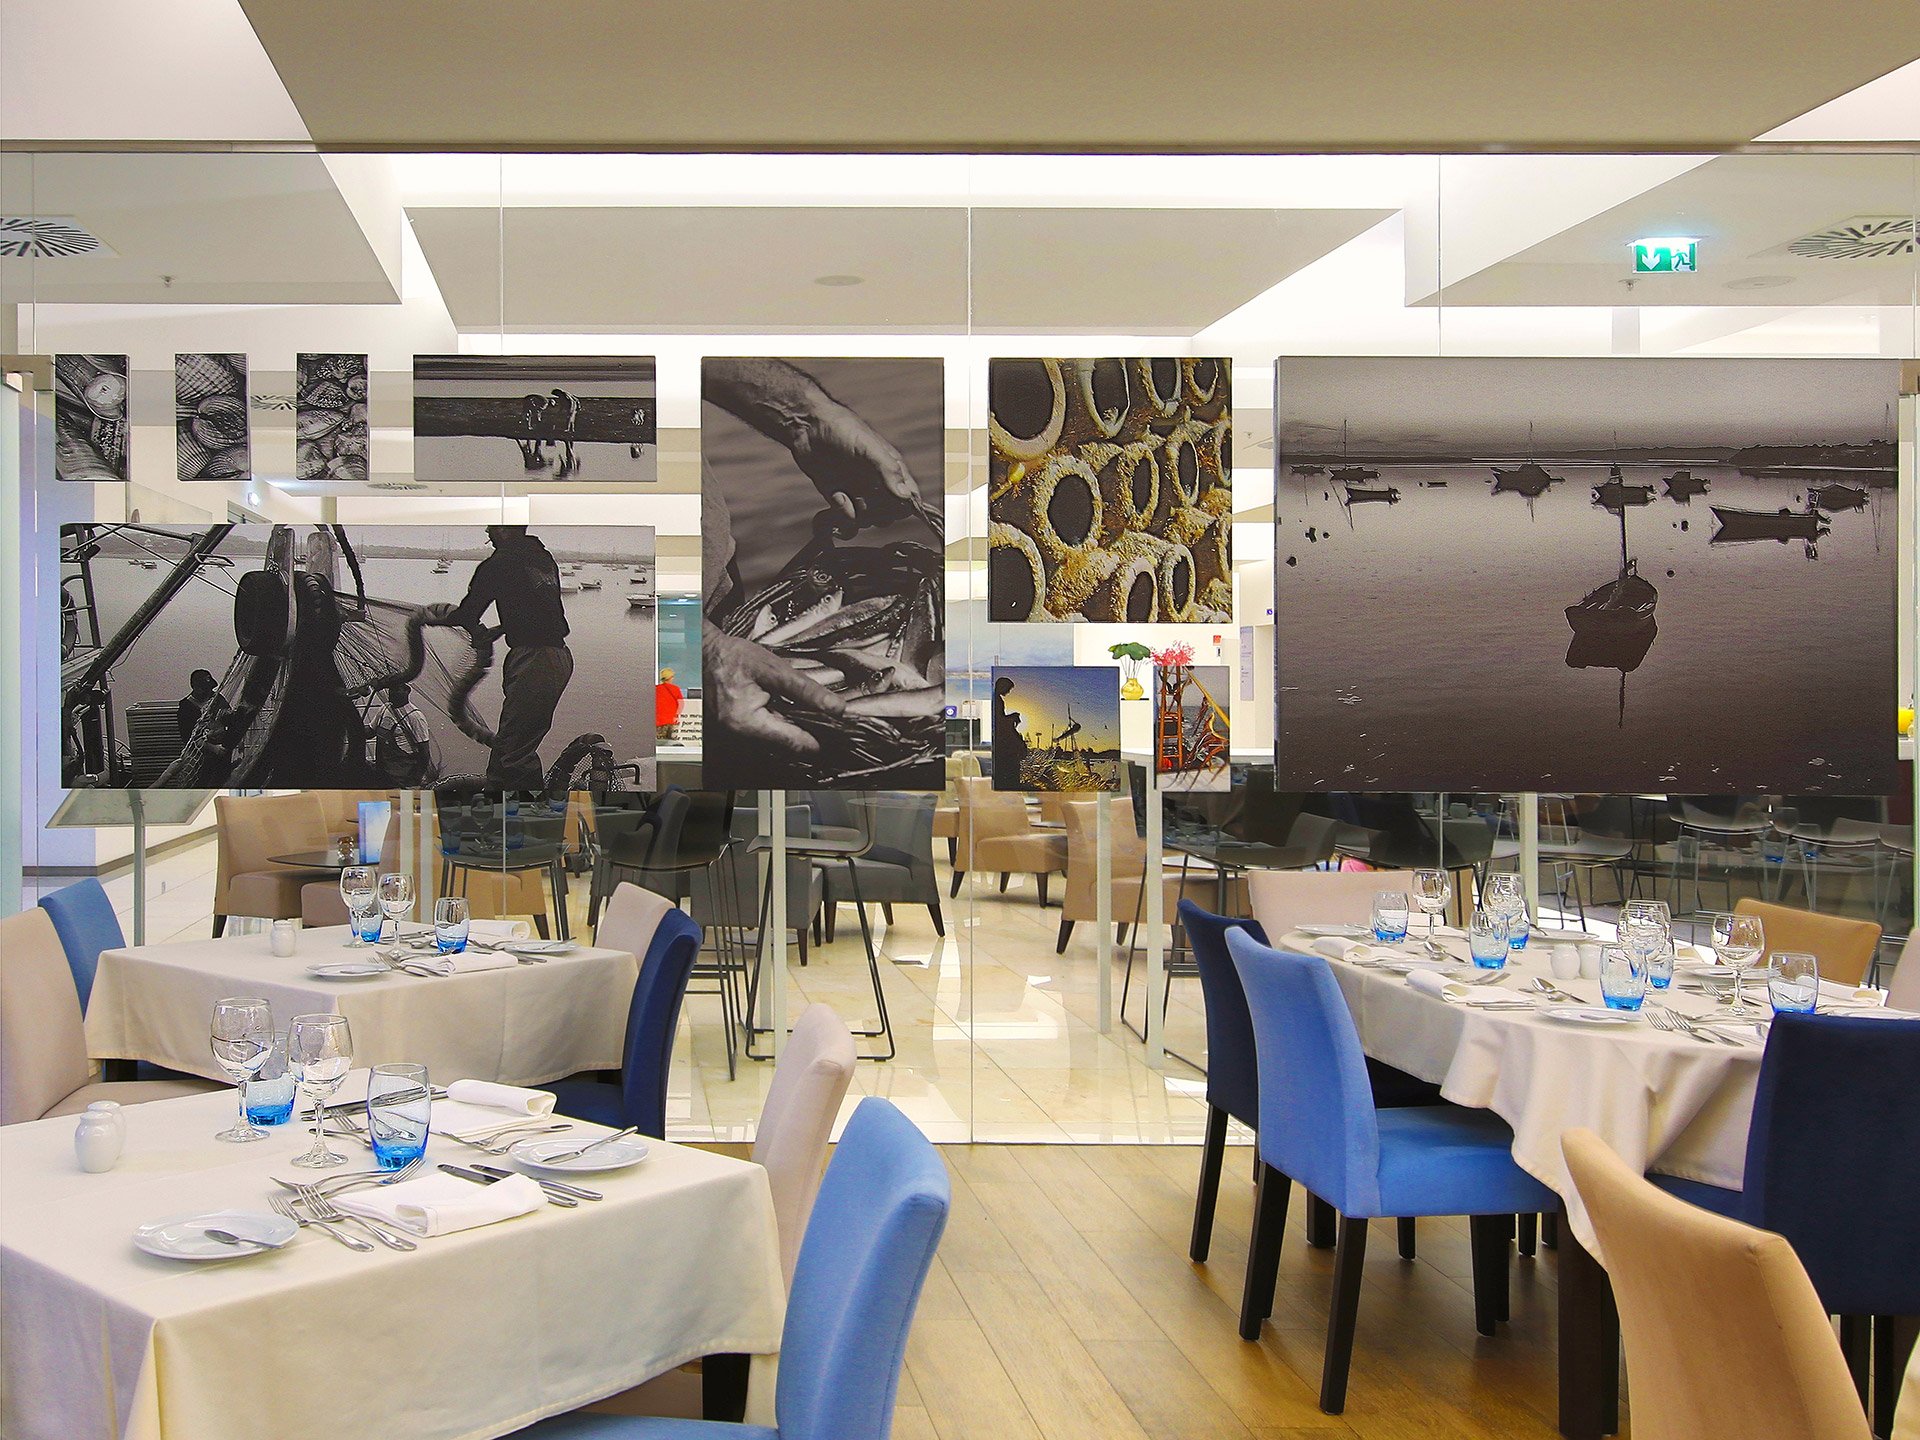 419/Photos-Lisboa/Restaurant/201610-JupiterLx-booking--Restaurante-003.jpg